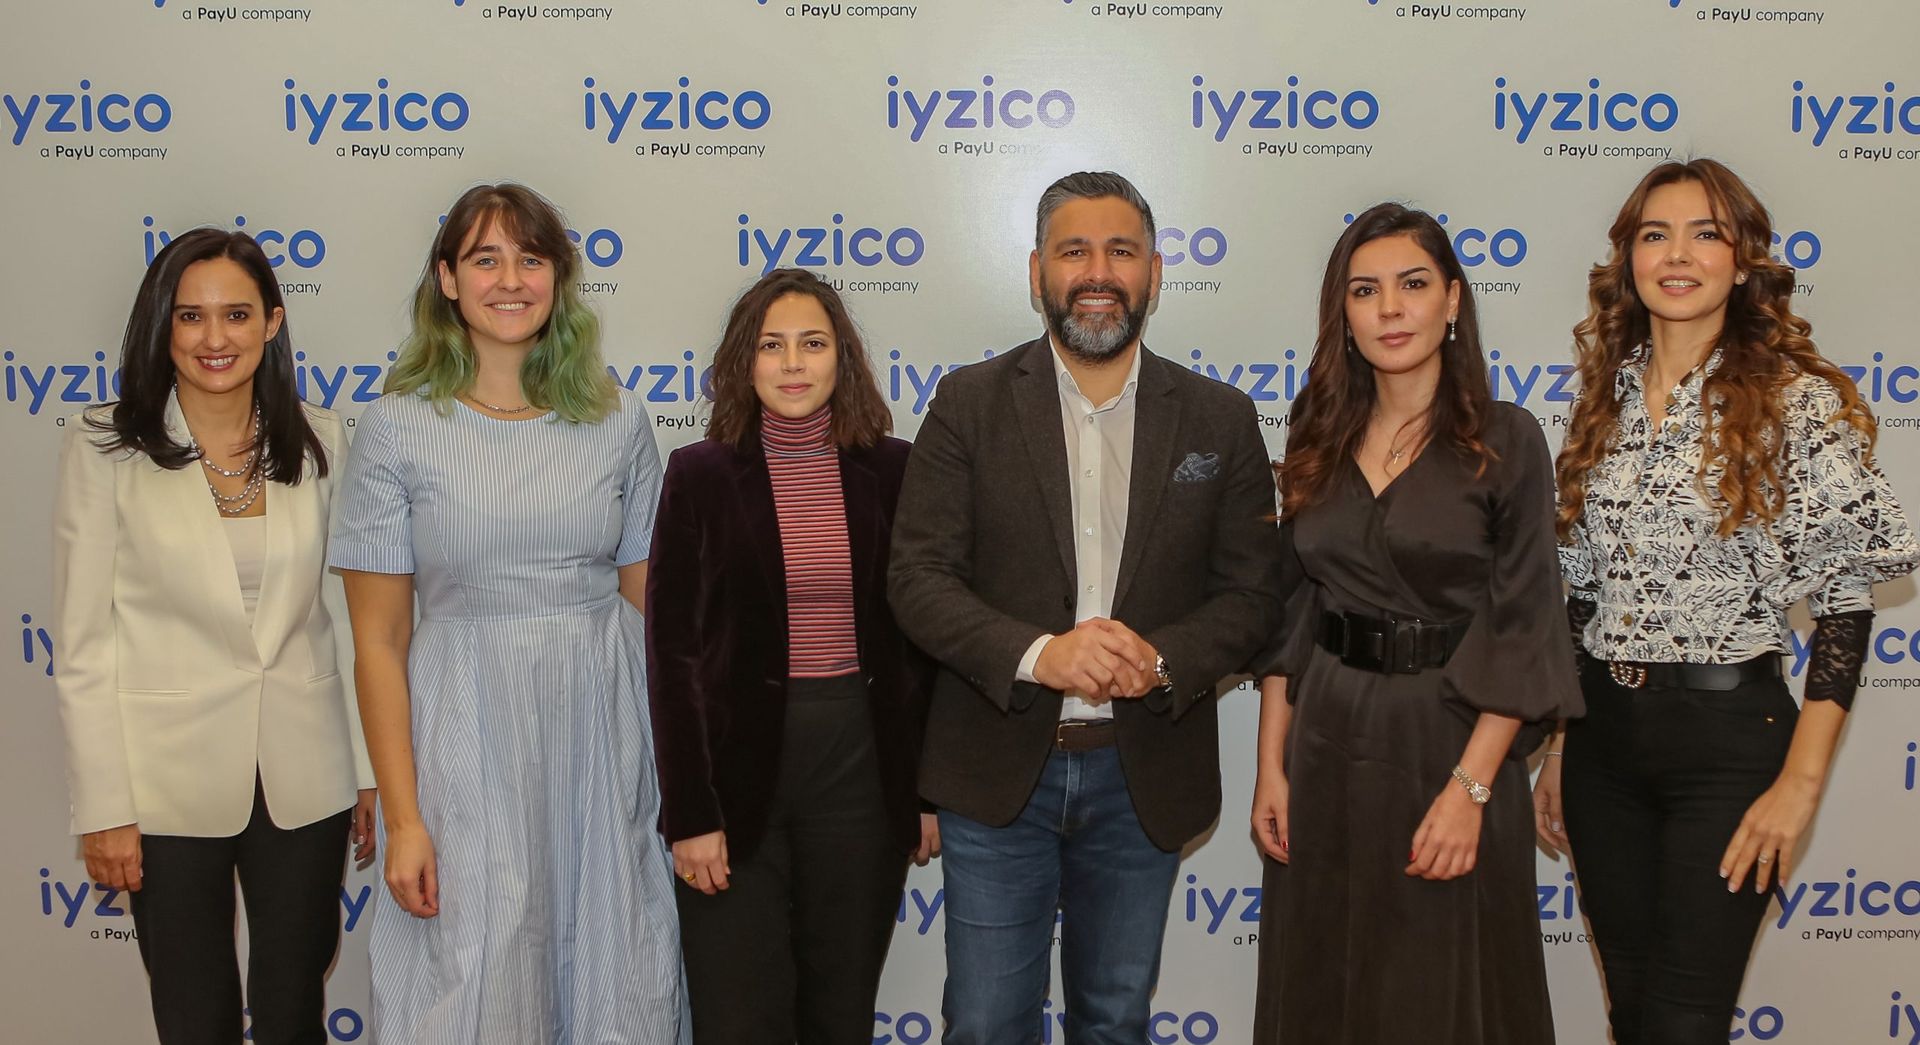 iyzico Kadın Girişimci Destek Programı’nın dördüncü başvuru dönemi başladı